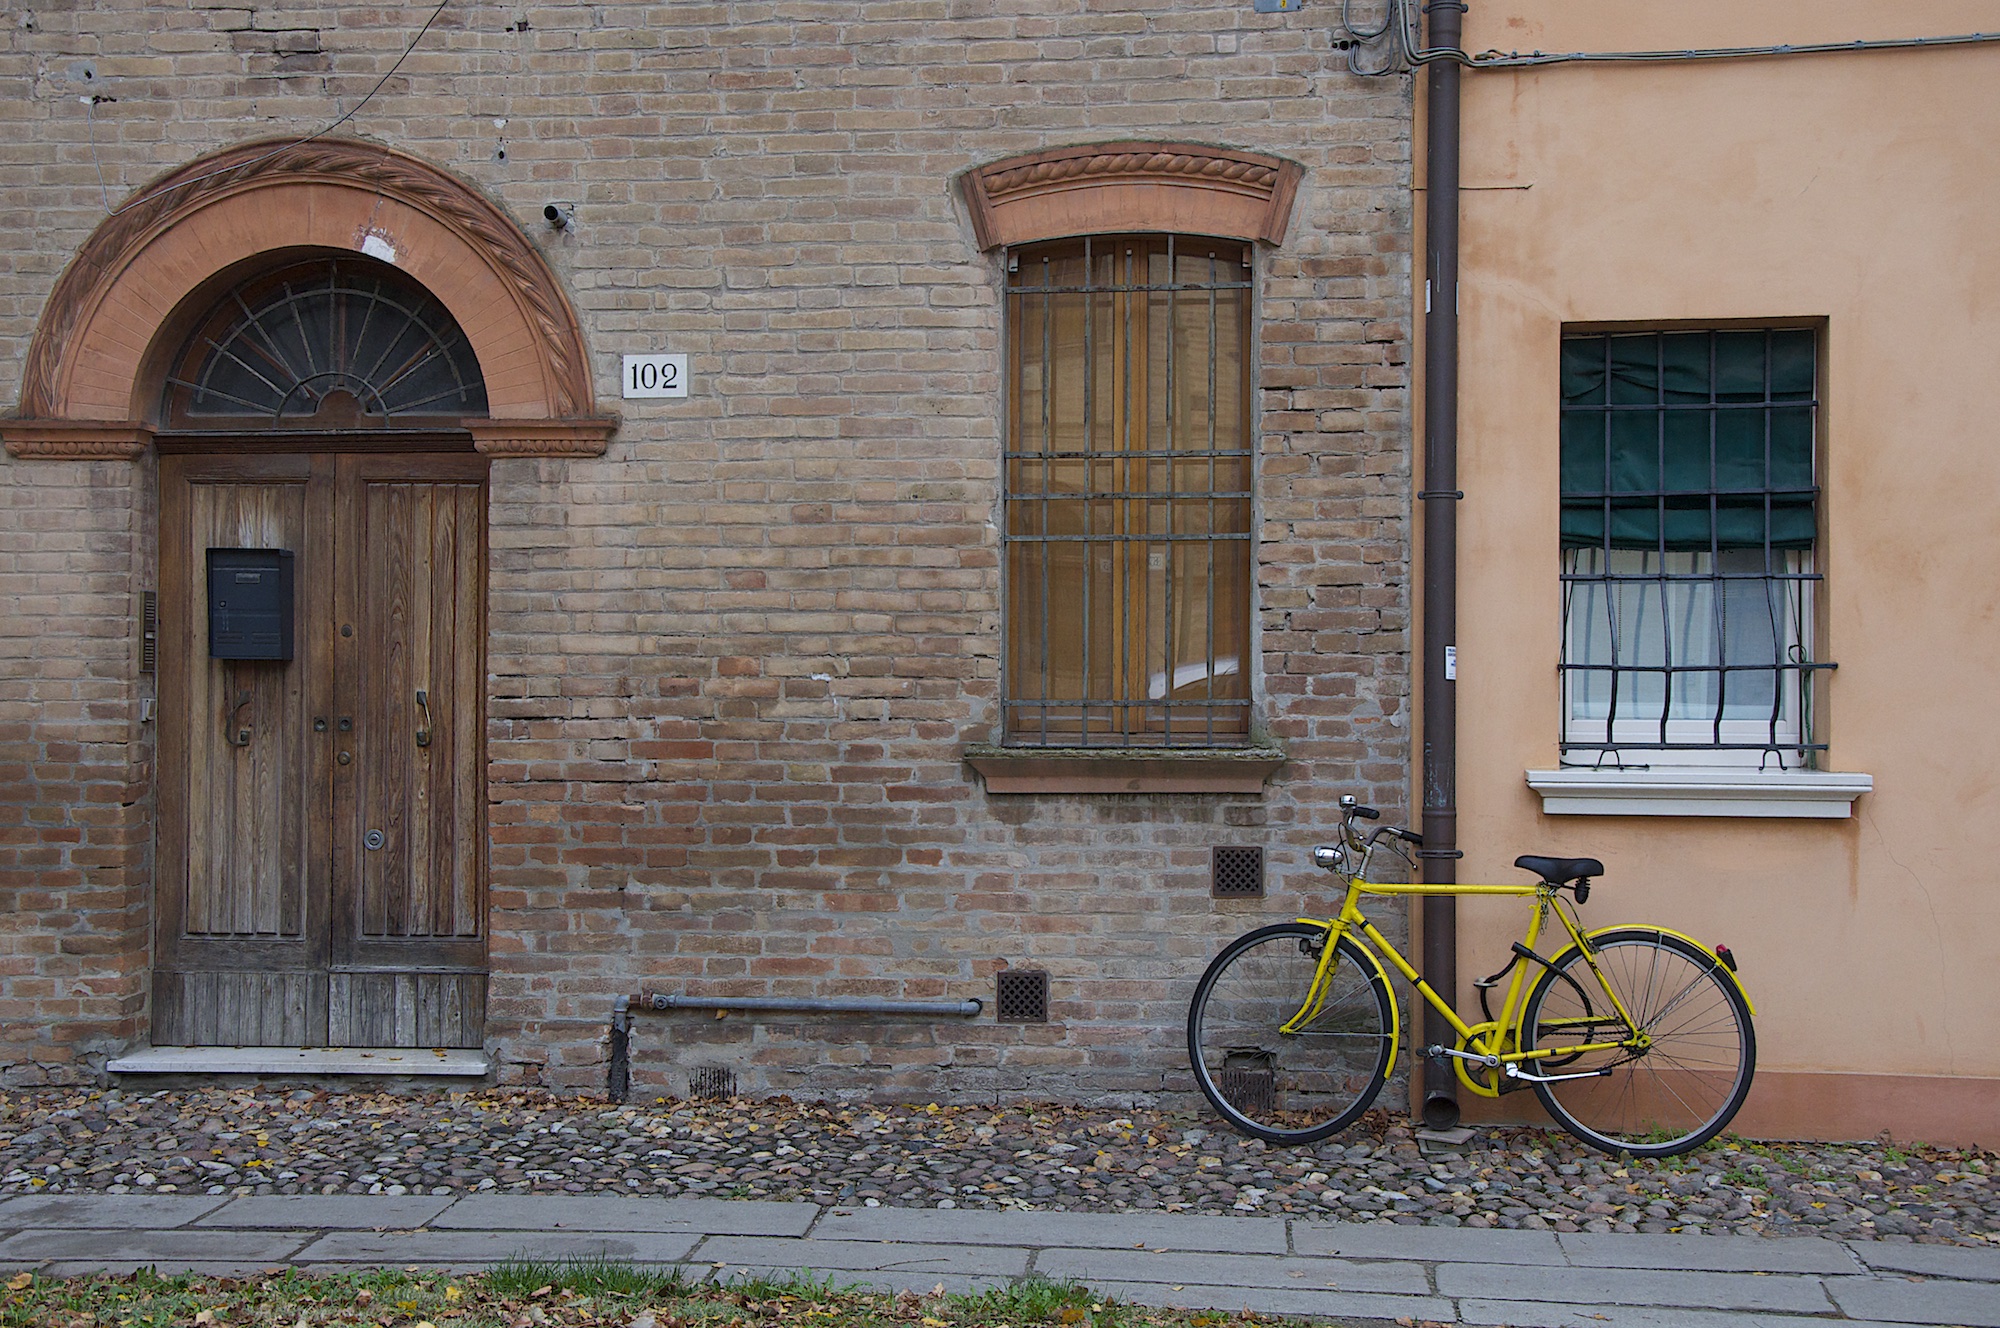 Ferrara, Italy